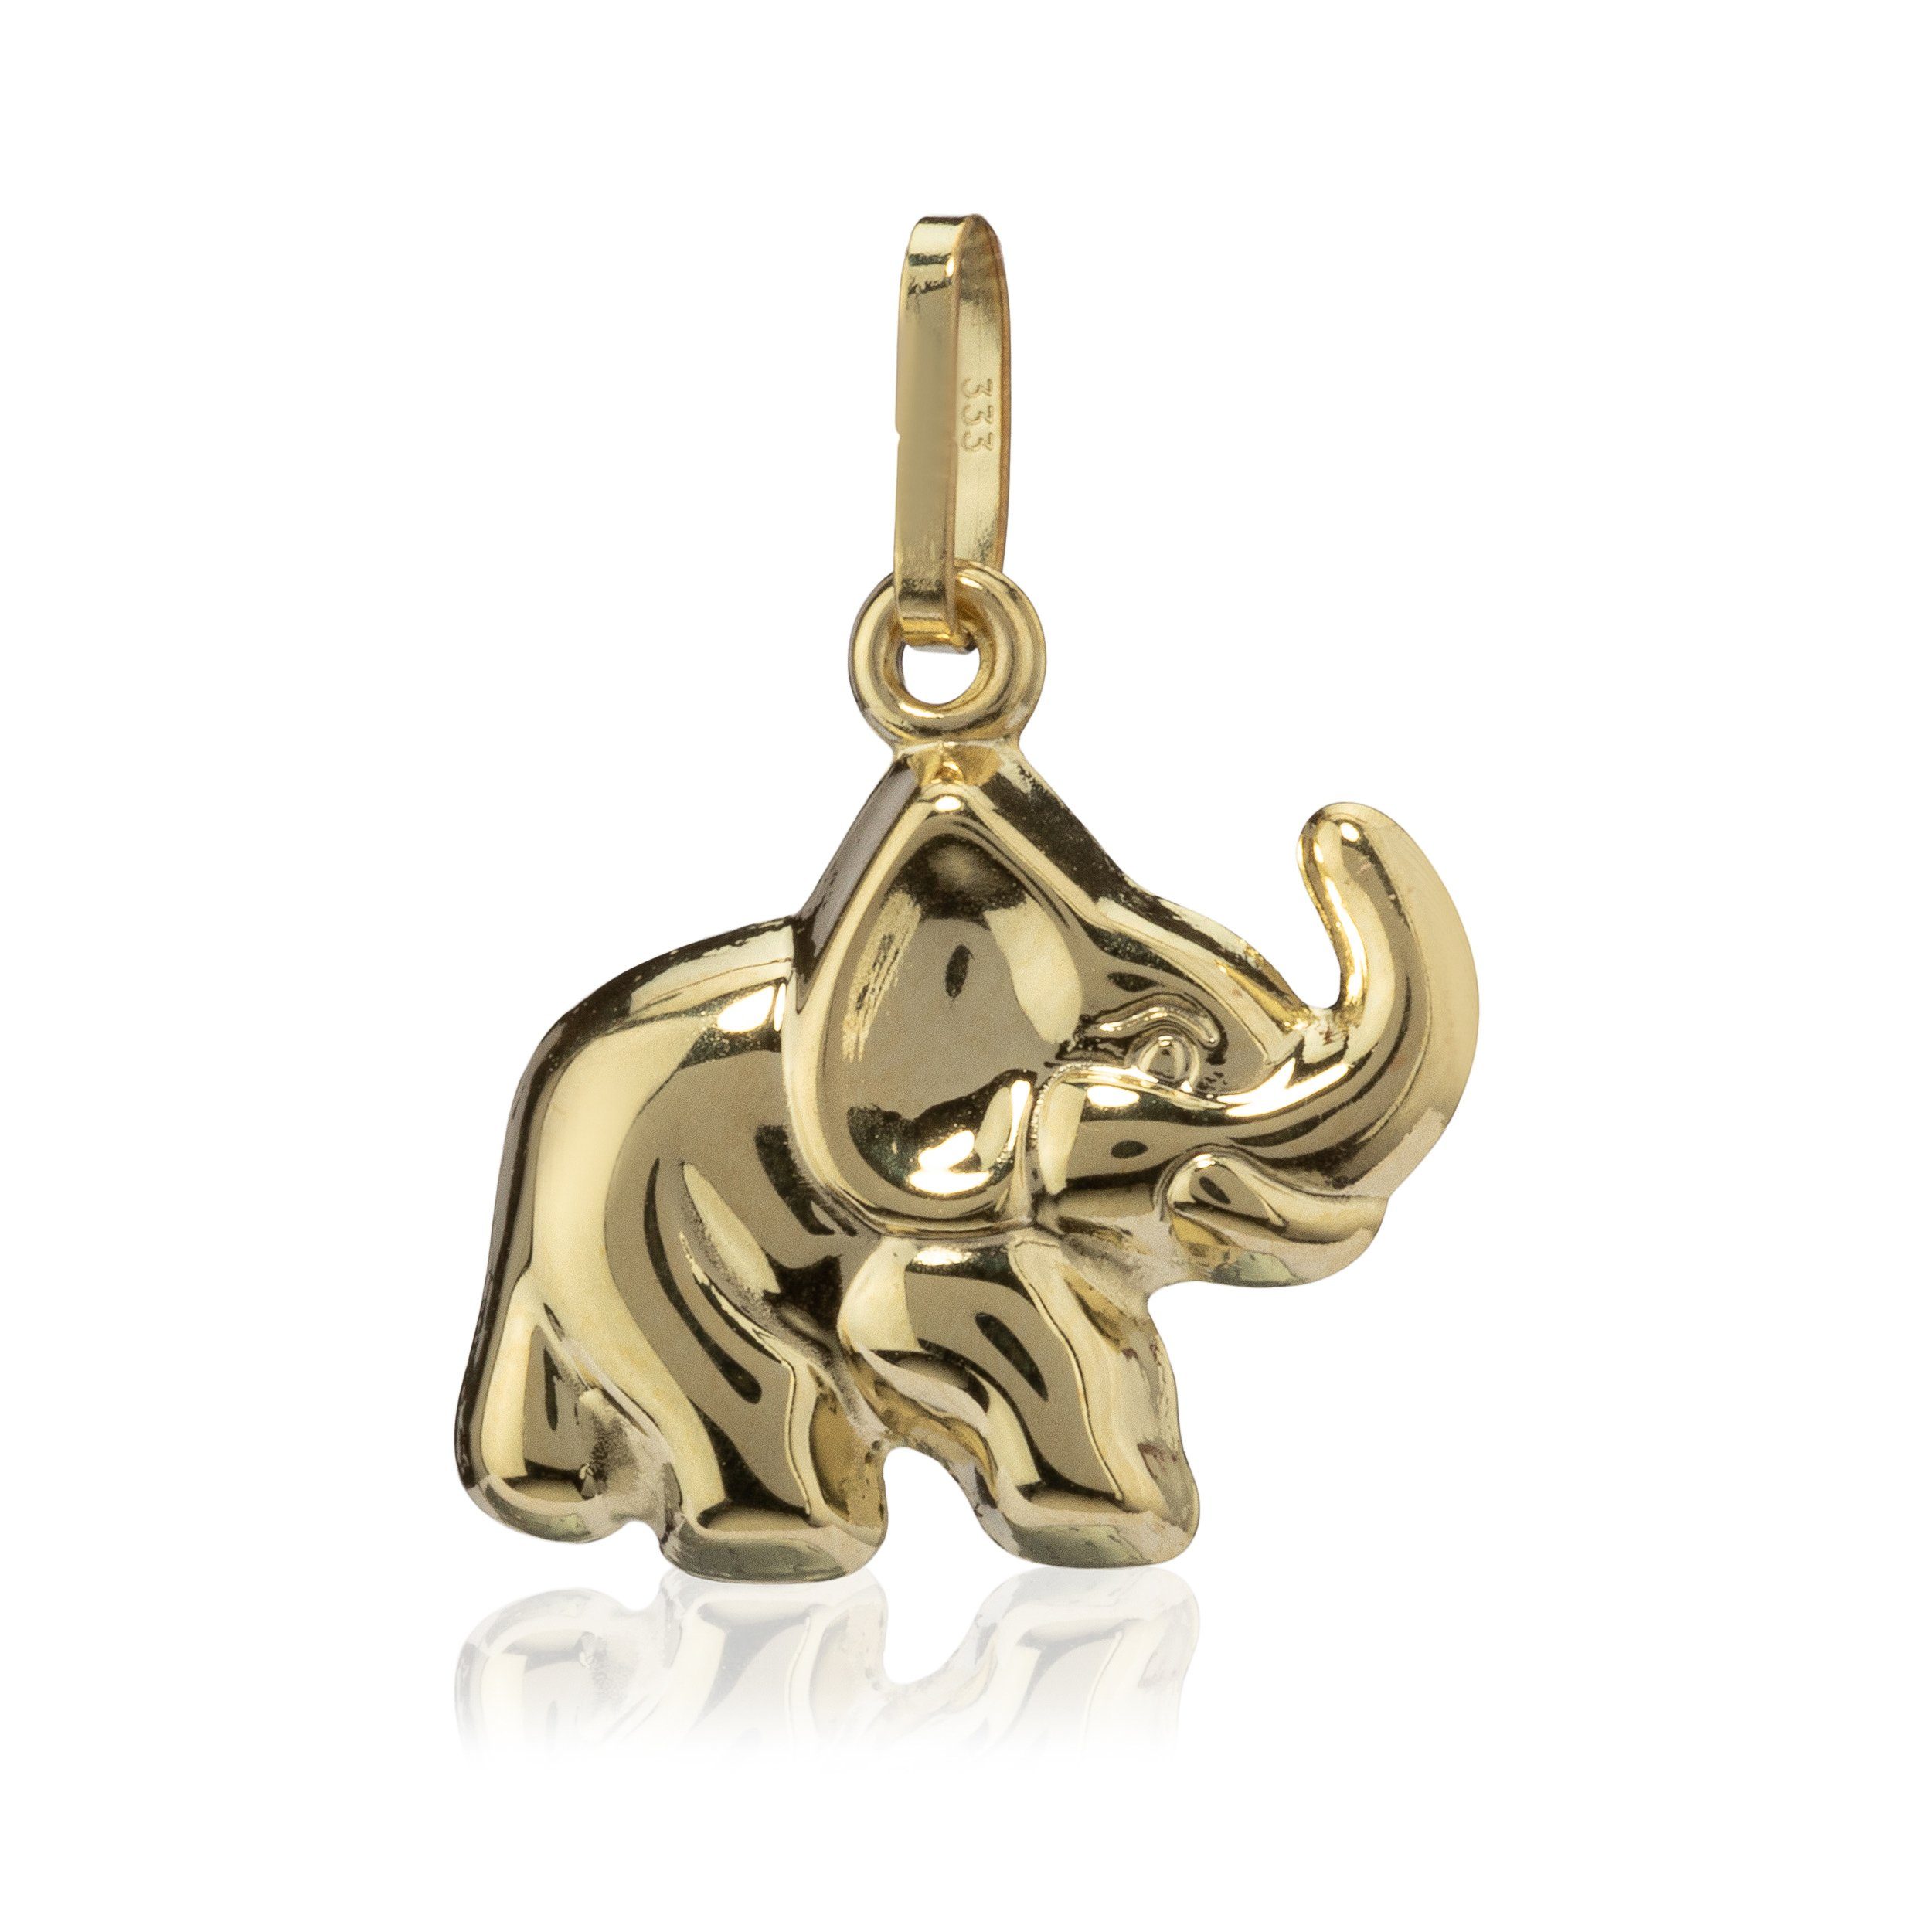 NKlaus Gold Elefant Karat klein Kettenanhänger Gelb Kettenanhänger 333 8